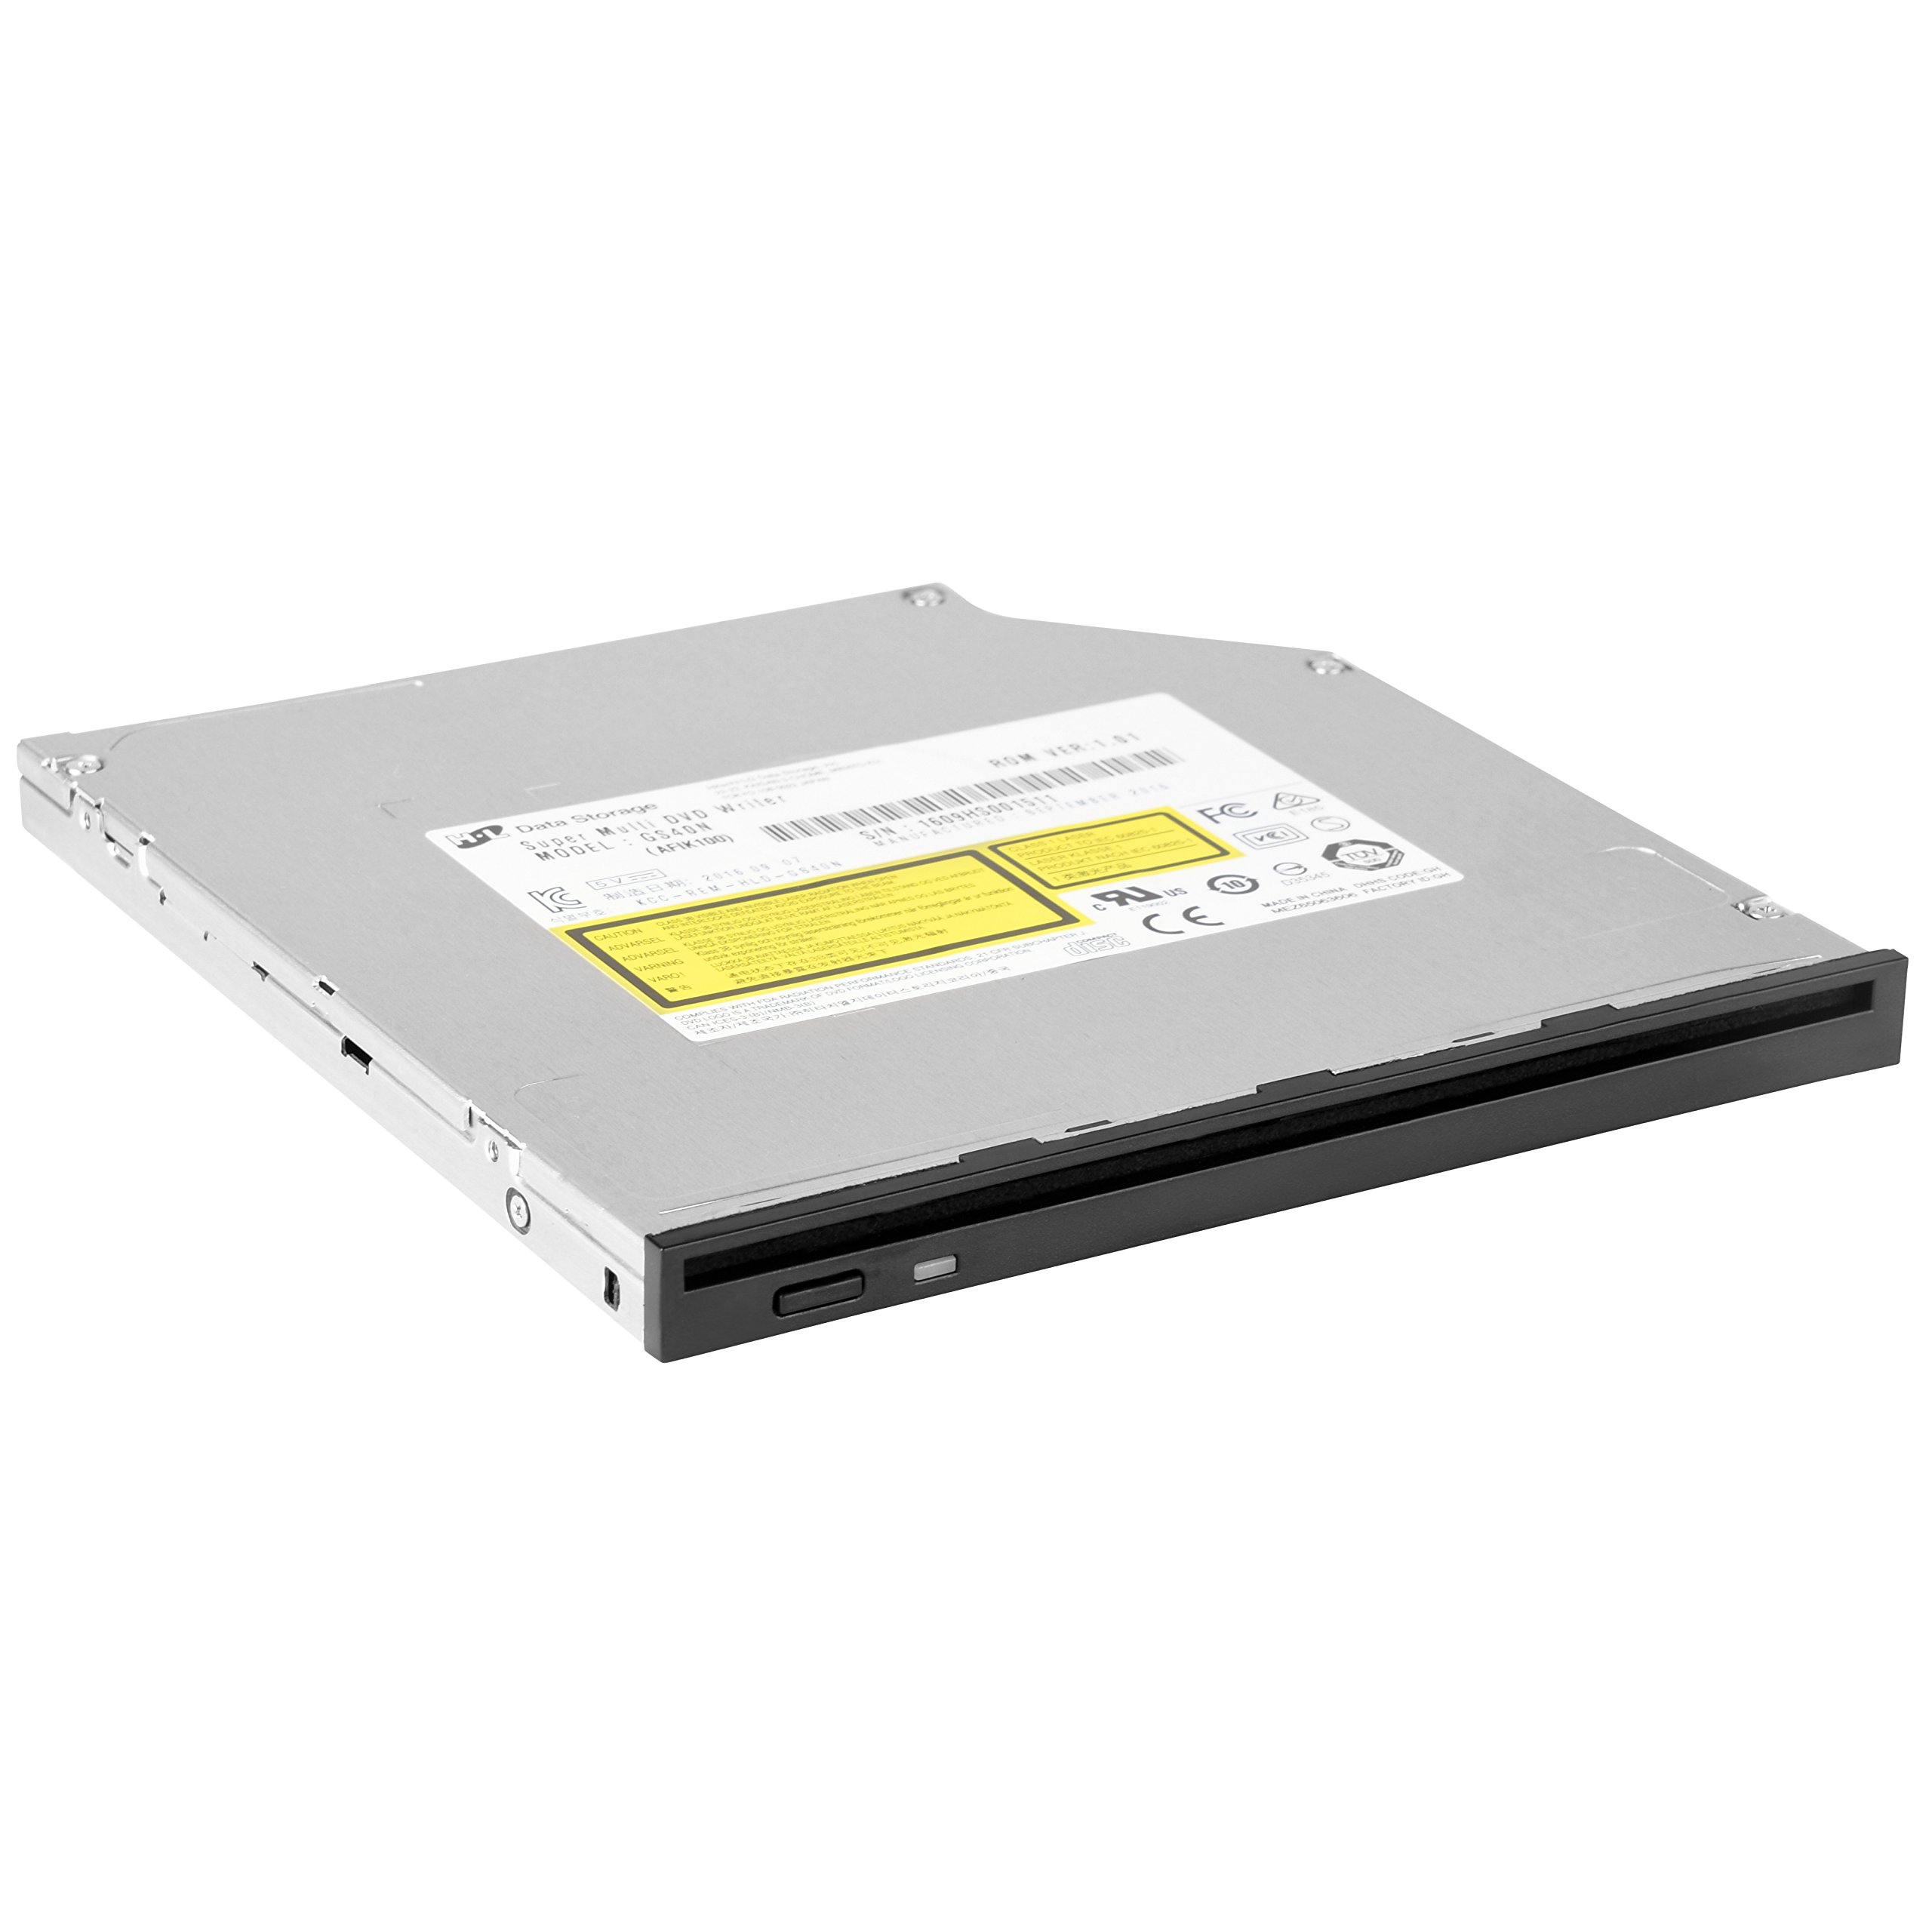 SilverStone 71120 SST-SOD04 - Internes optisches Slim DVD-RW-Laufwerk mit austauschbarer Frontblede für 9,5 mm und 12,7 mm Standard, schwarz